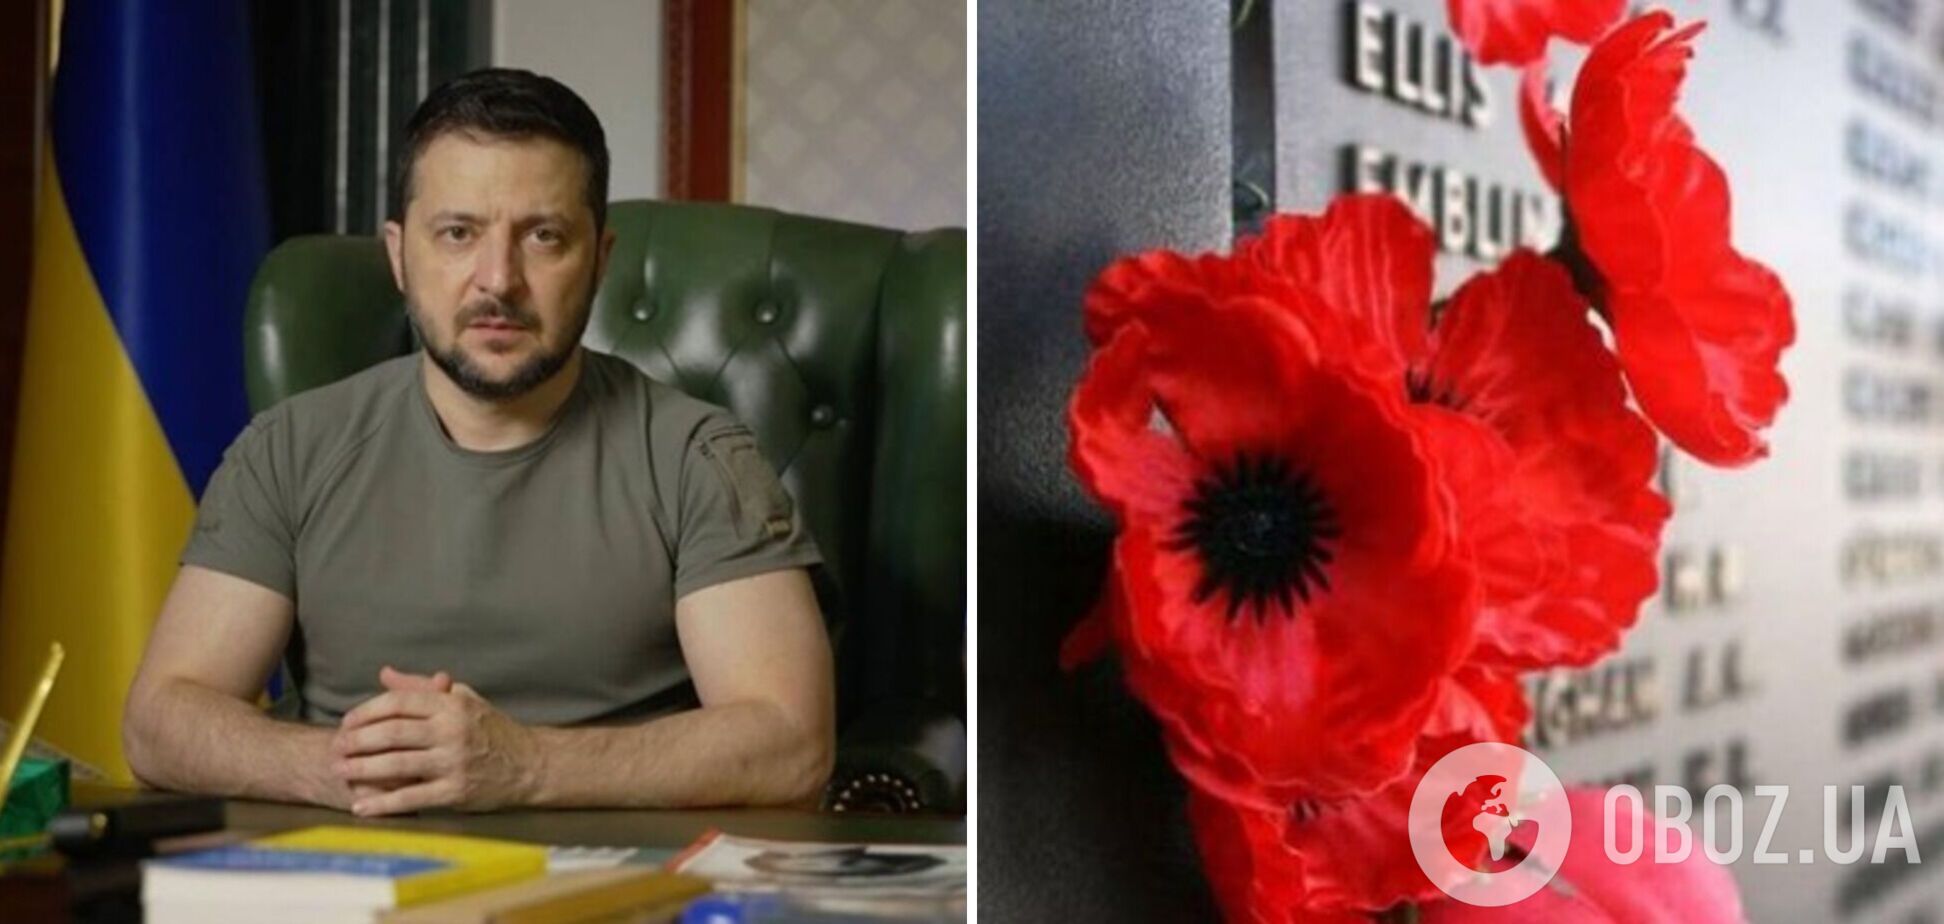 'Мы возвращаем нашему государству честную историю': Зеленский обратился к украинцам в День памяти и примирения. Видео